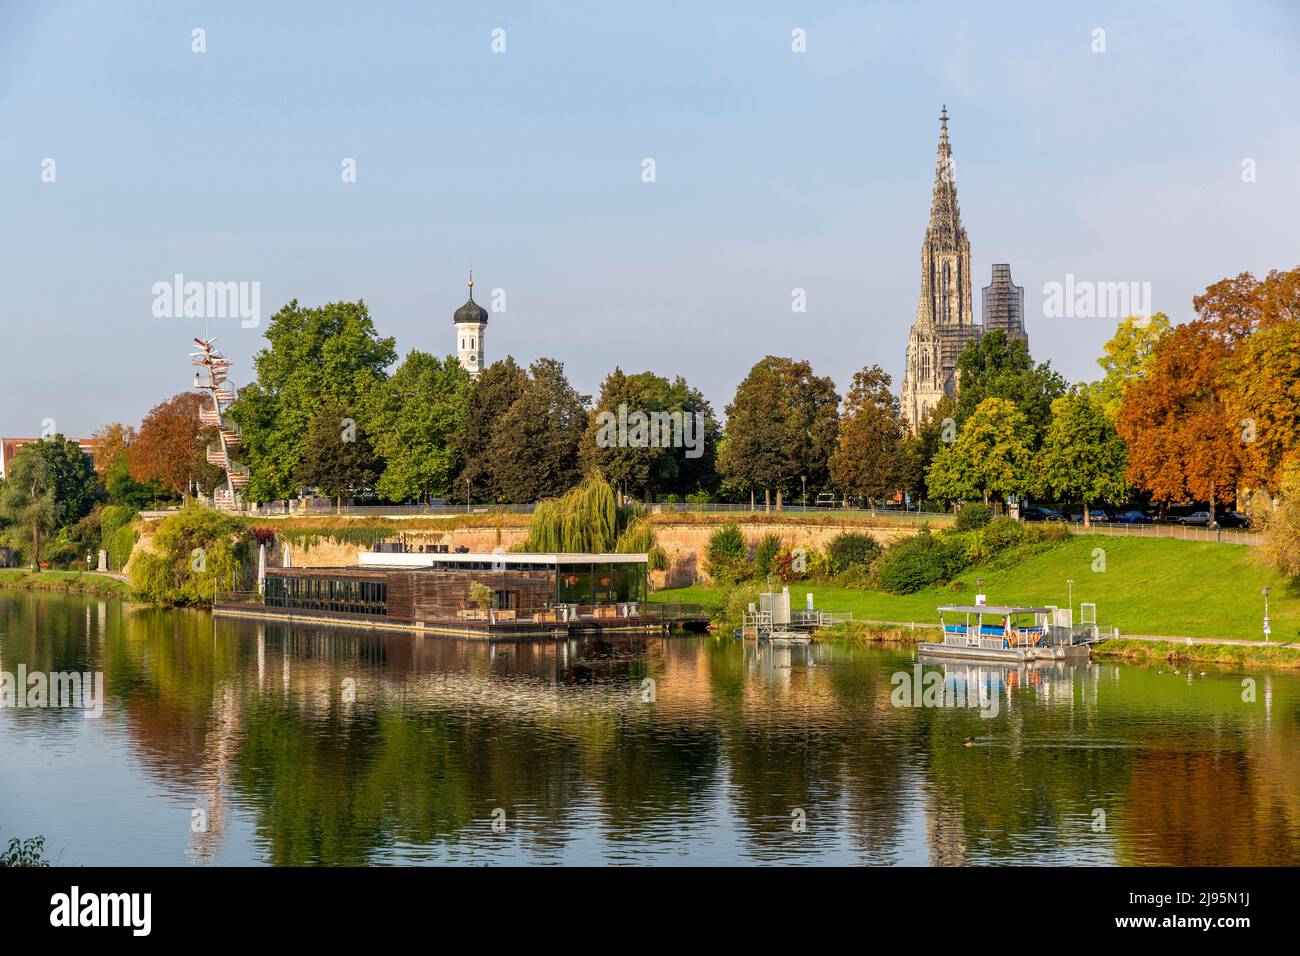 Paisaje urbano de Ulm con la famosa catedral en el fondo Foto de stock